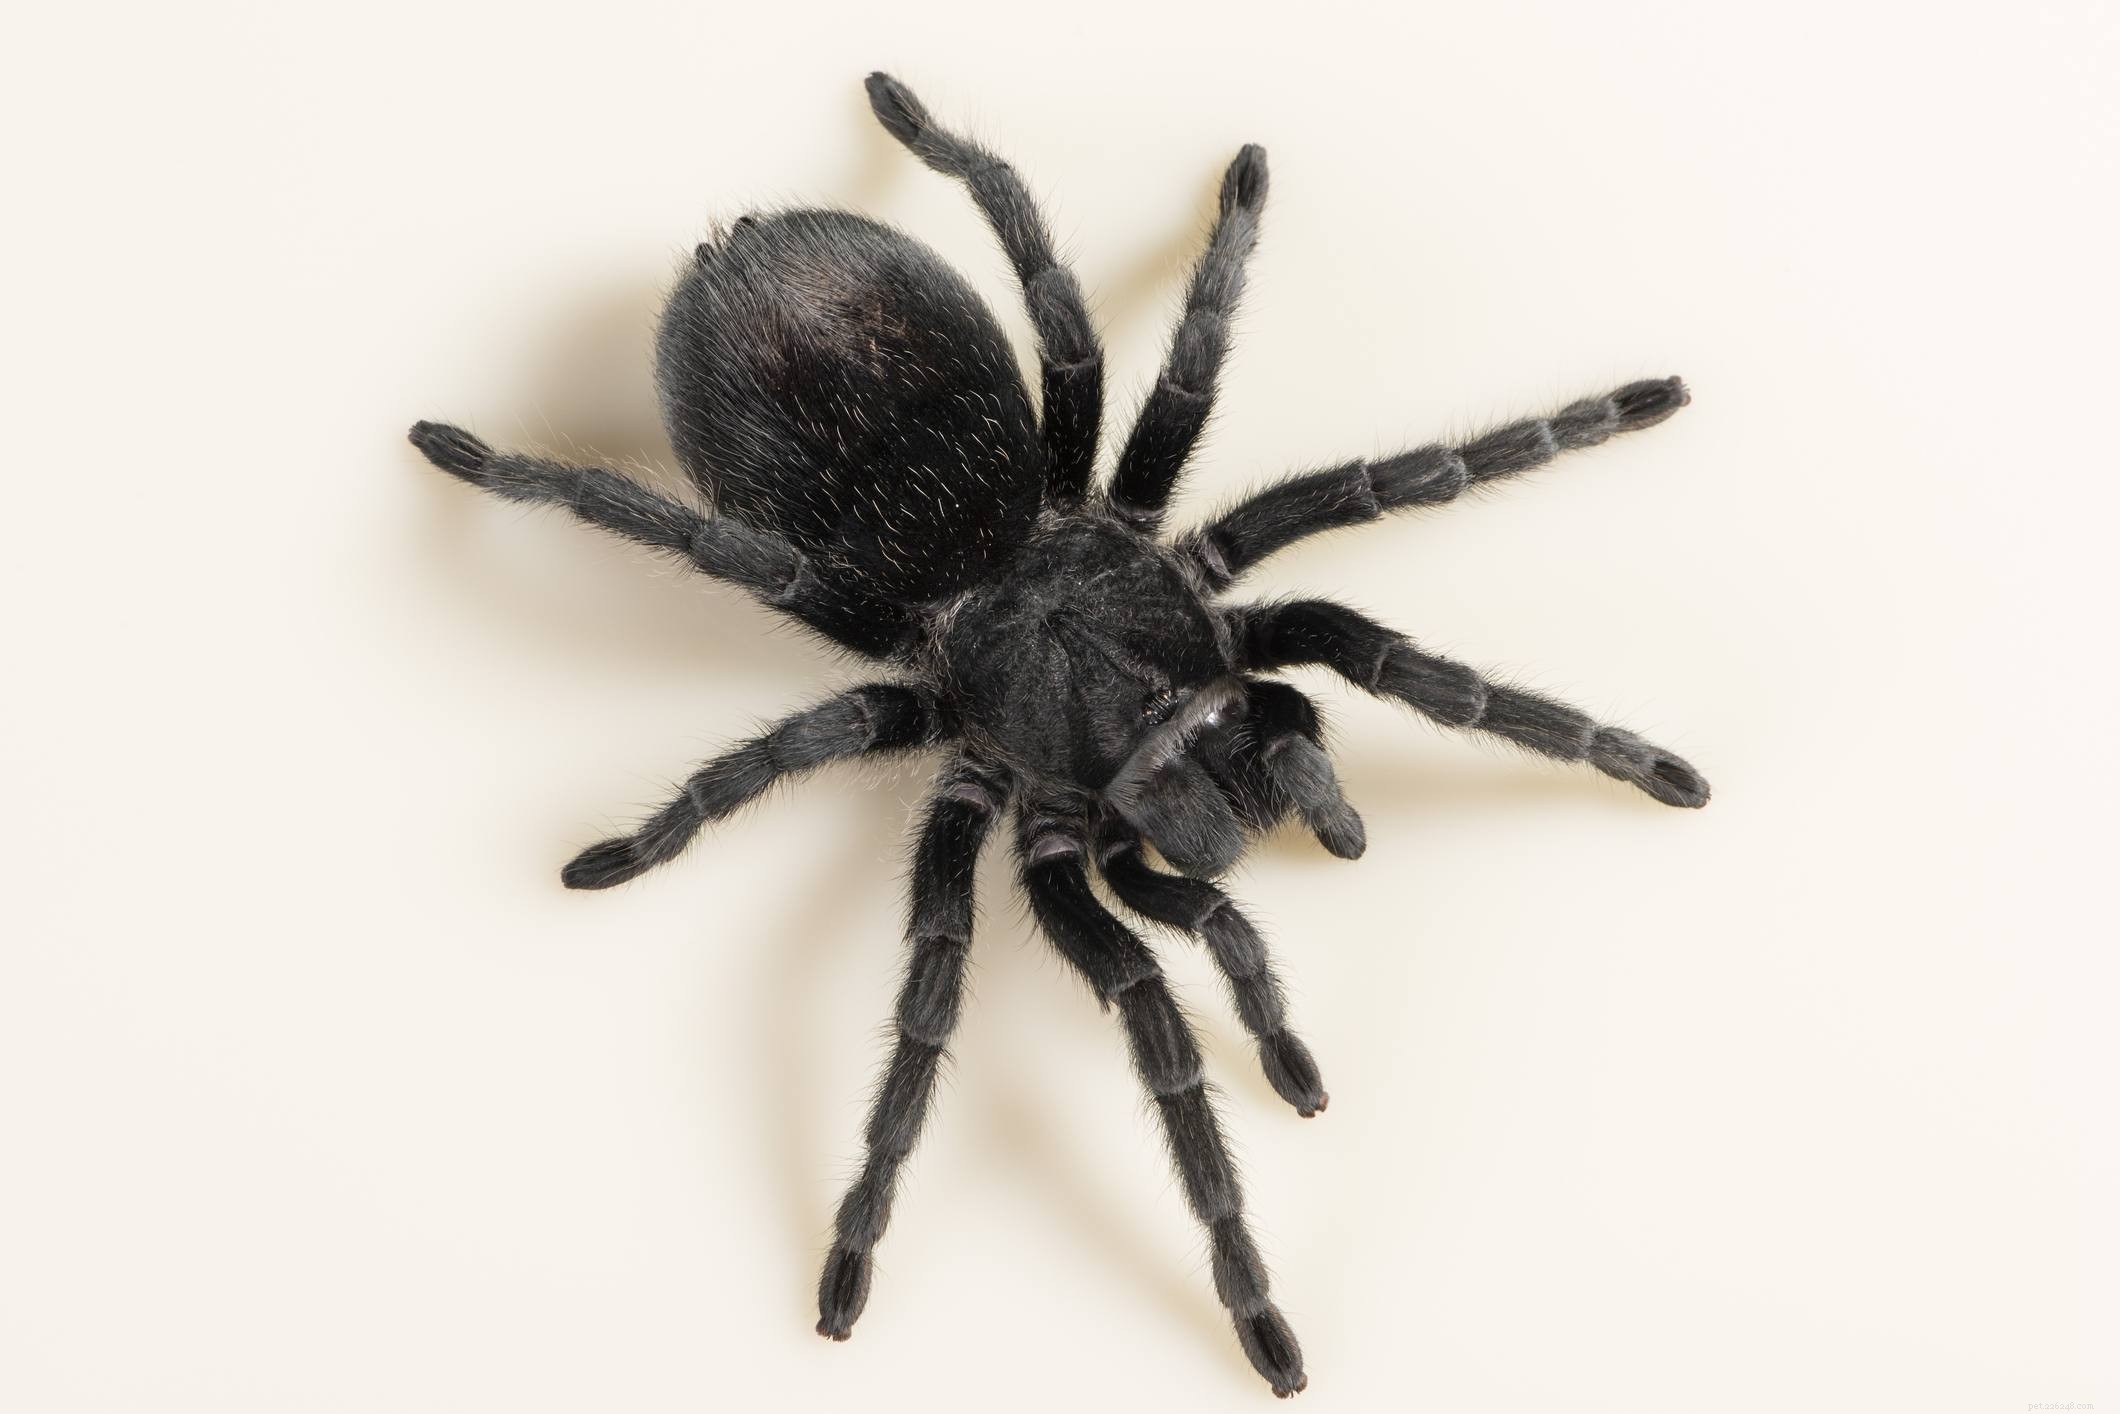 애완동물로 기르기 좋은 10가지 타란툴라 거미 종